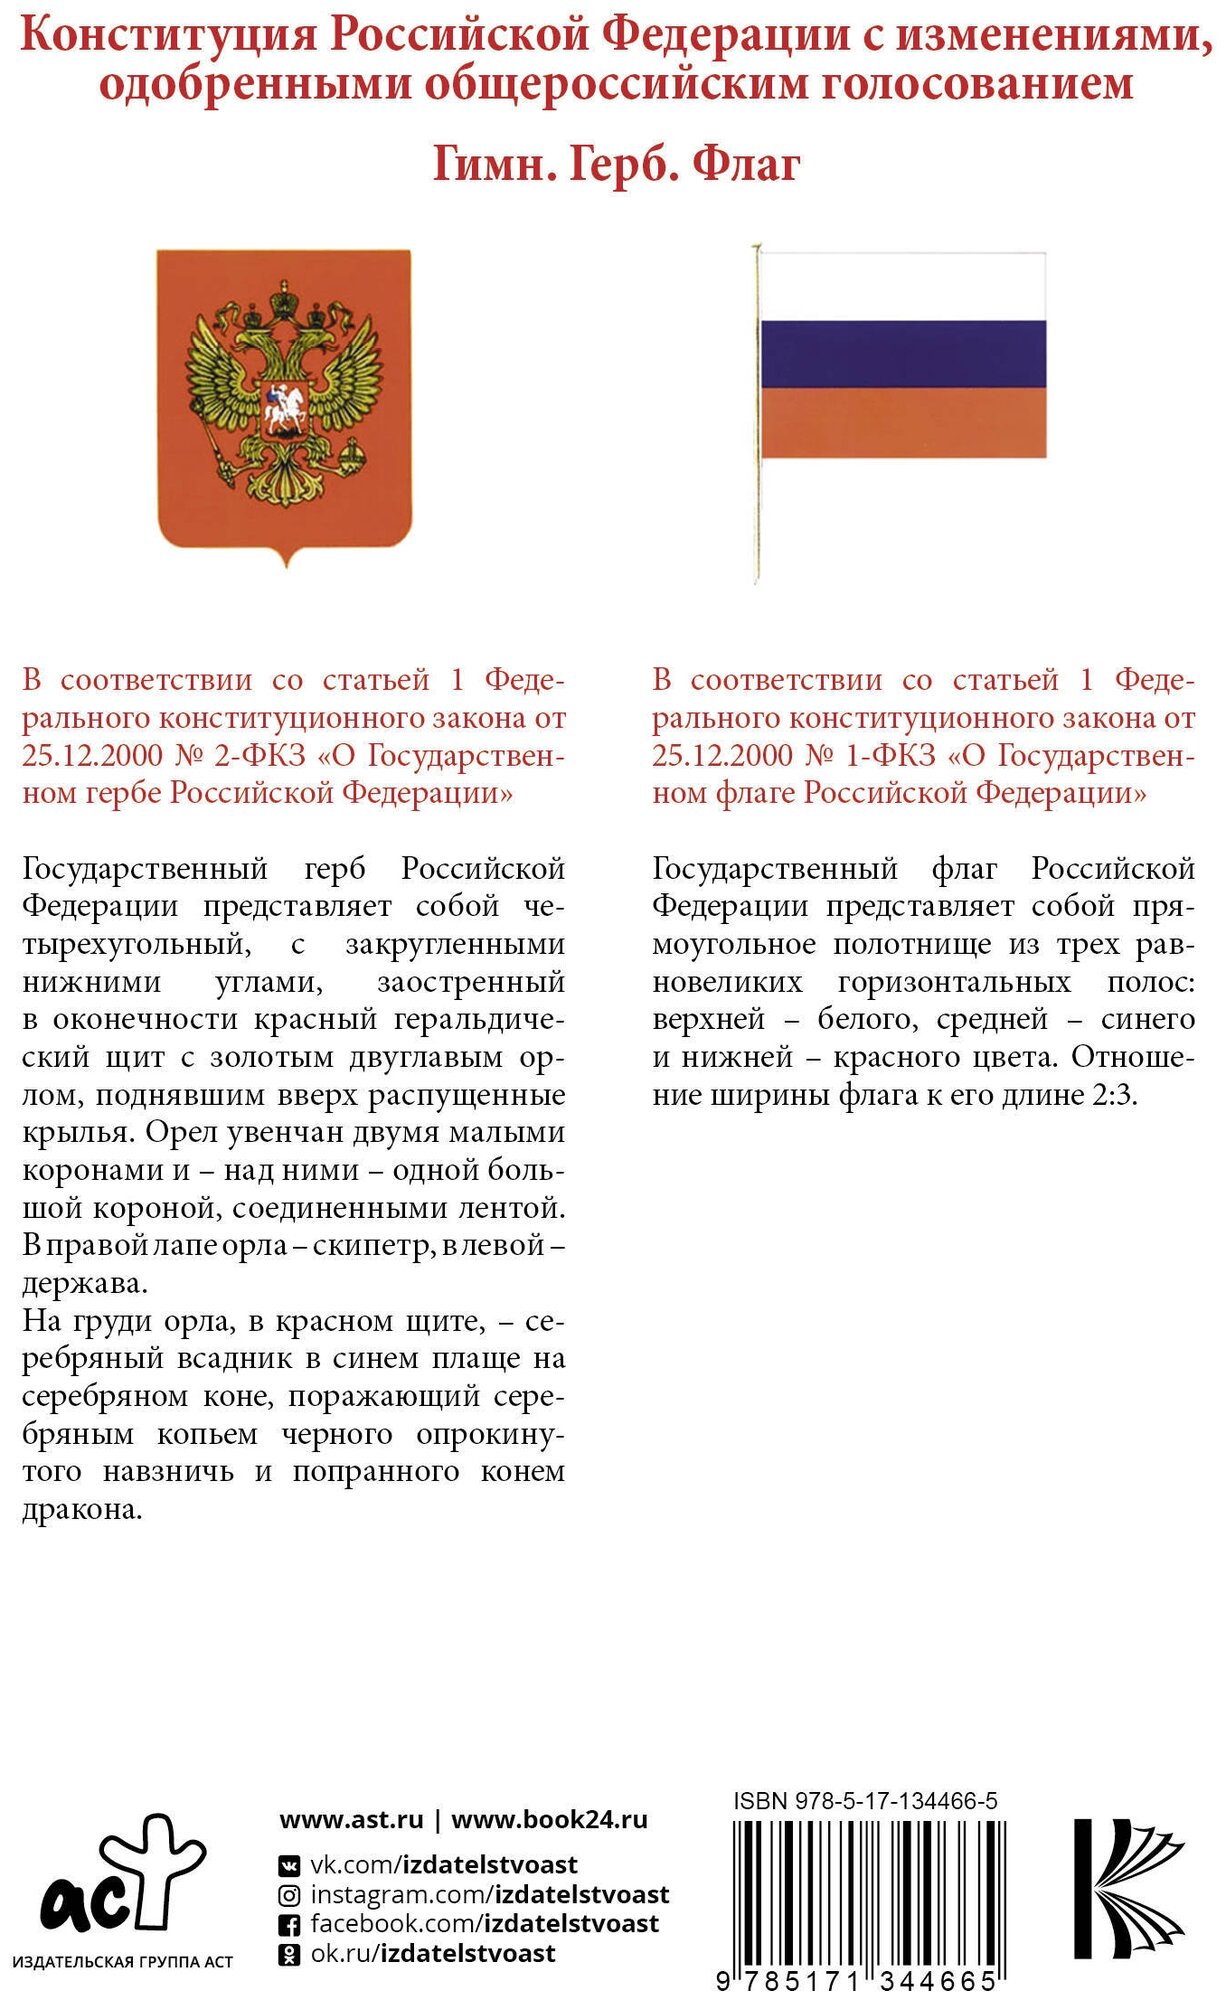 Конституция Российской Федерации с изменениями, одобренными общероссийским голосованием. Гимн, герб и флаг Российской Федерации - фото №2